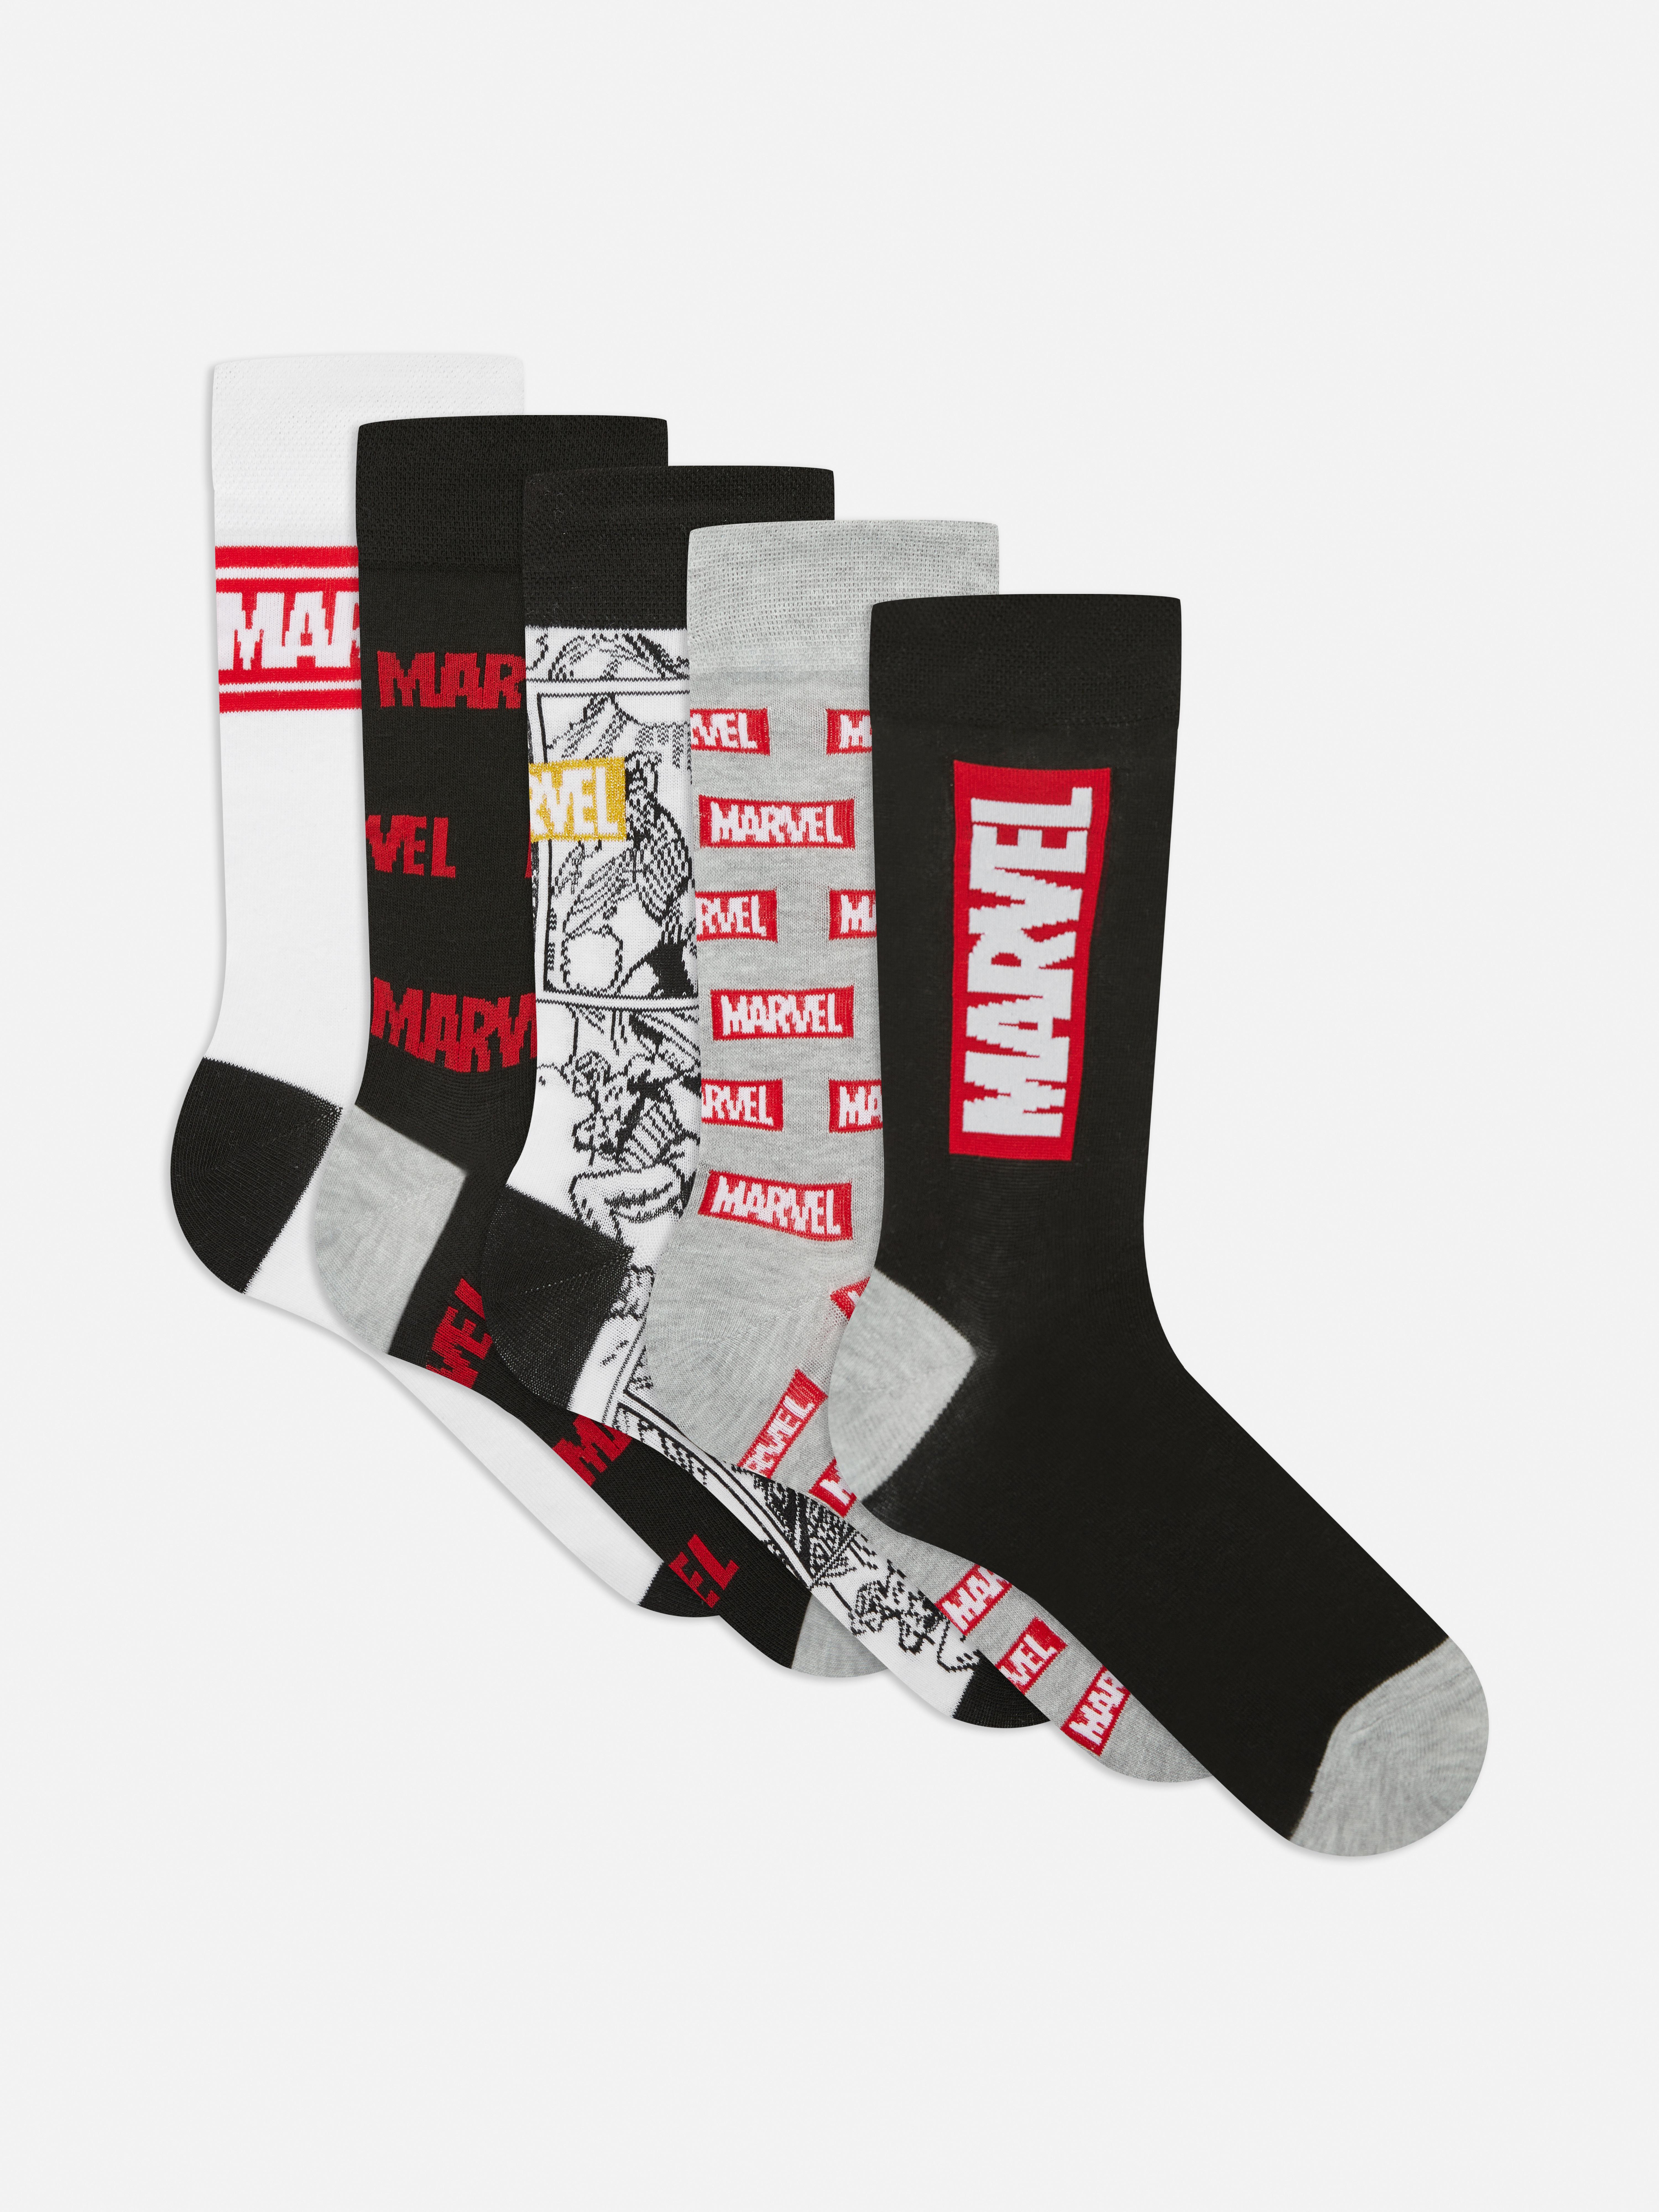 acceso Chaqueta caravana Pack de 5 pares de calcetines de Marvel | Primark